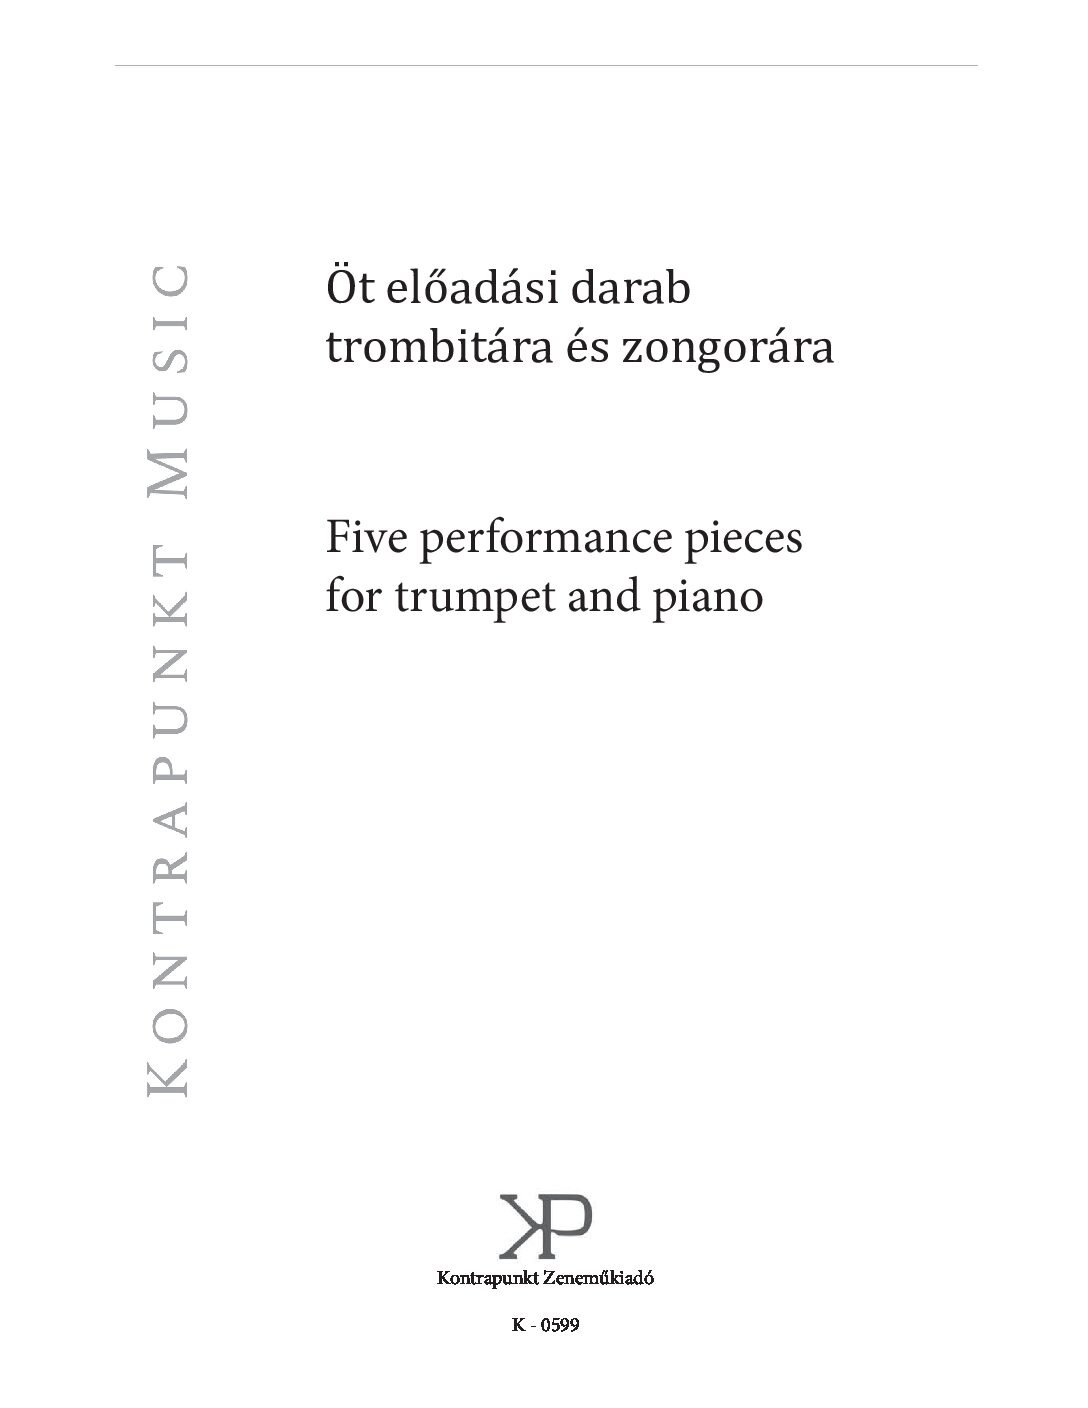 Öt előadási darab trombitára és zongorára